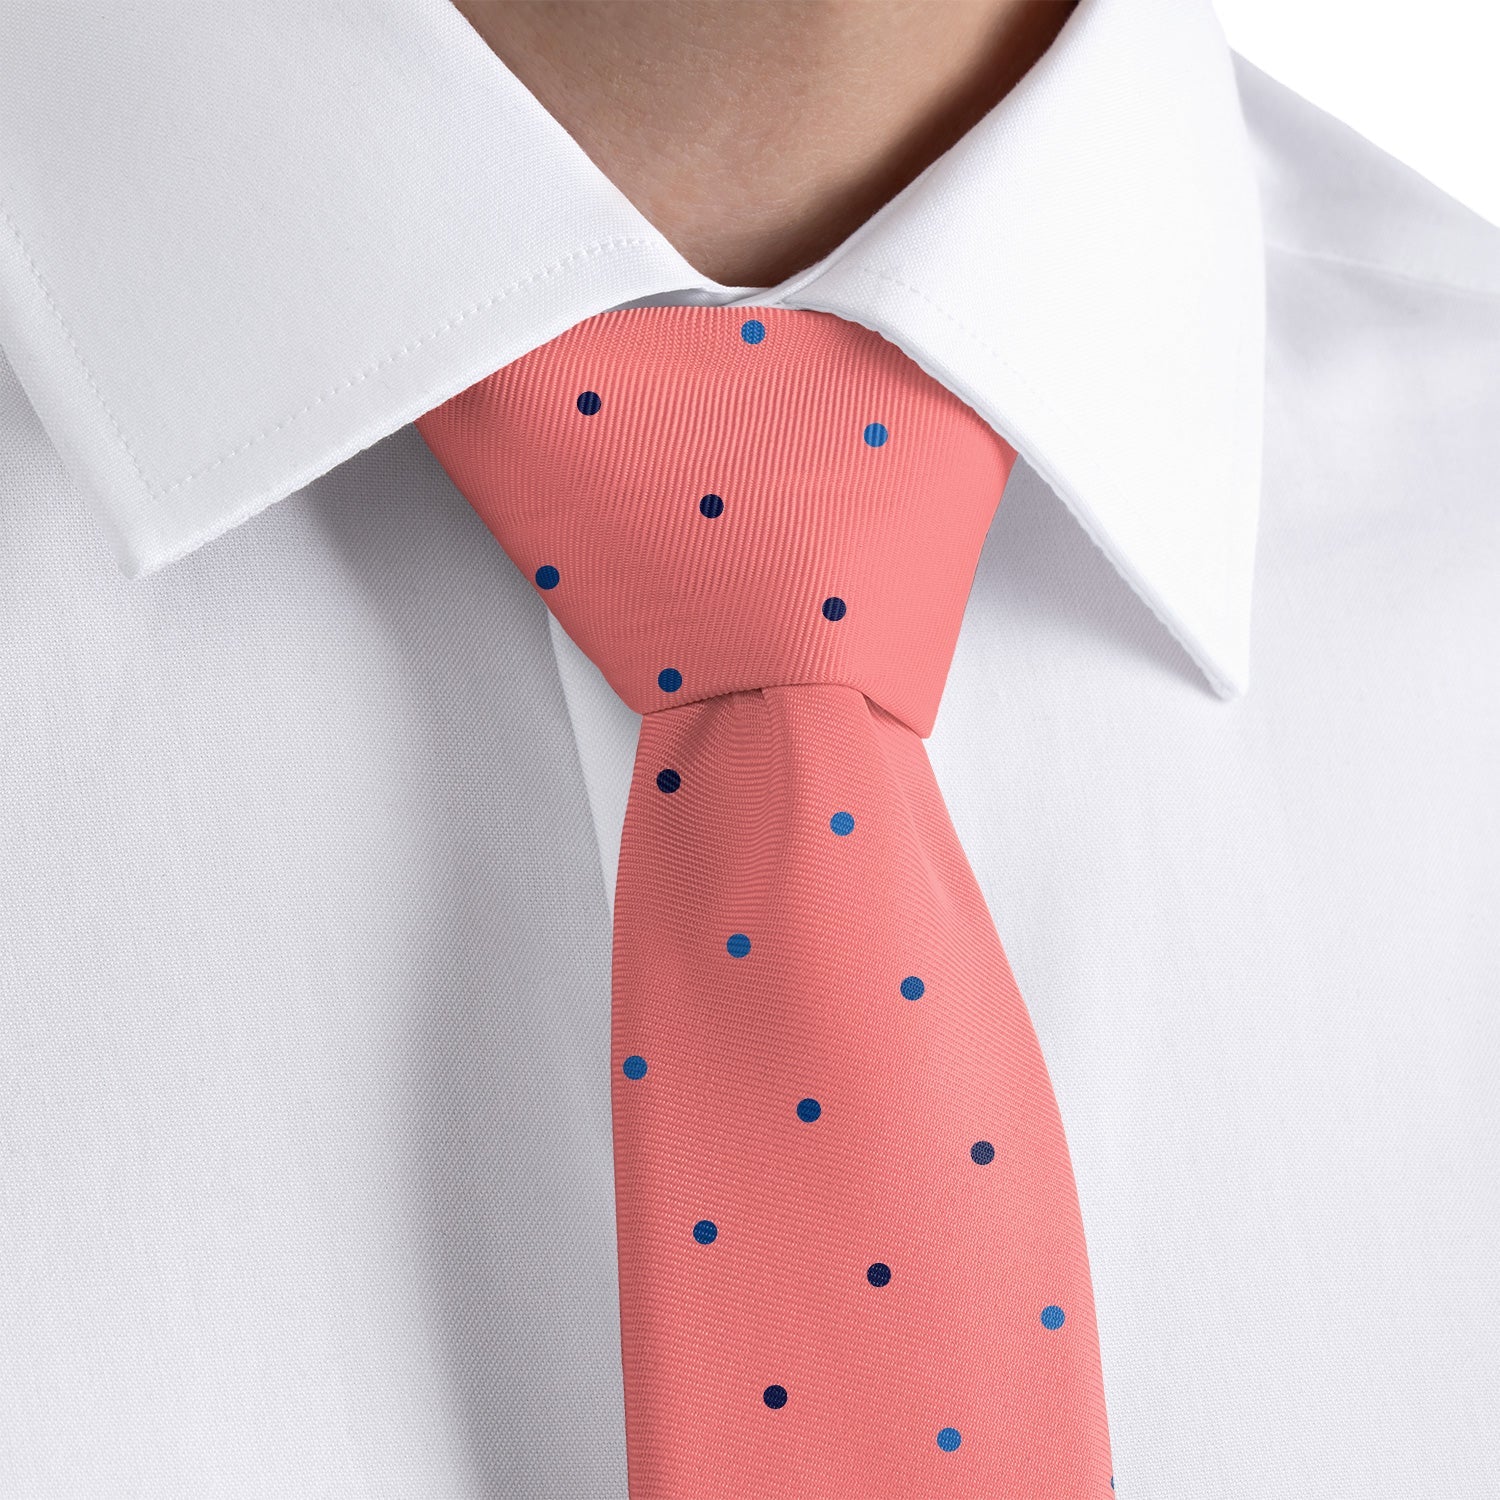 Four Color Denver Dots Necktie - Rolled - Knotty Tie Co.